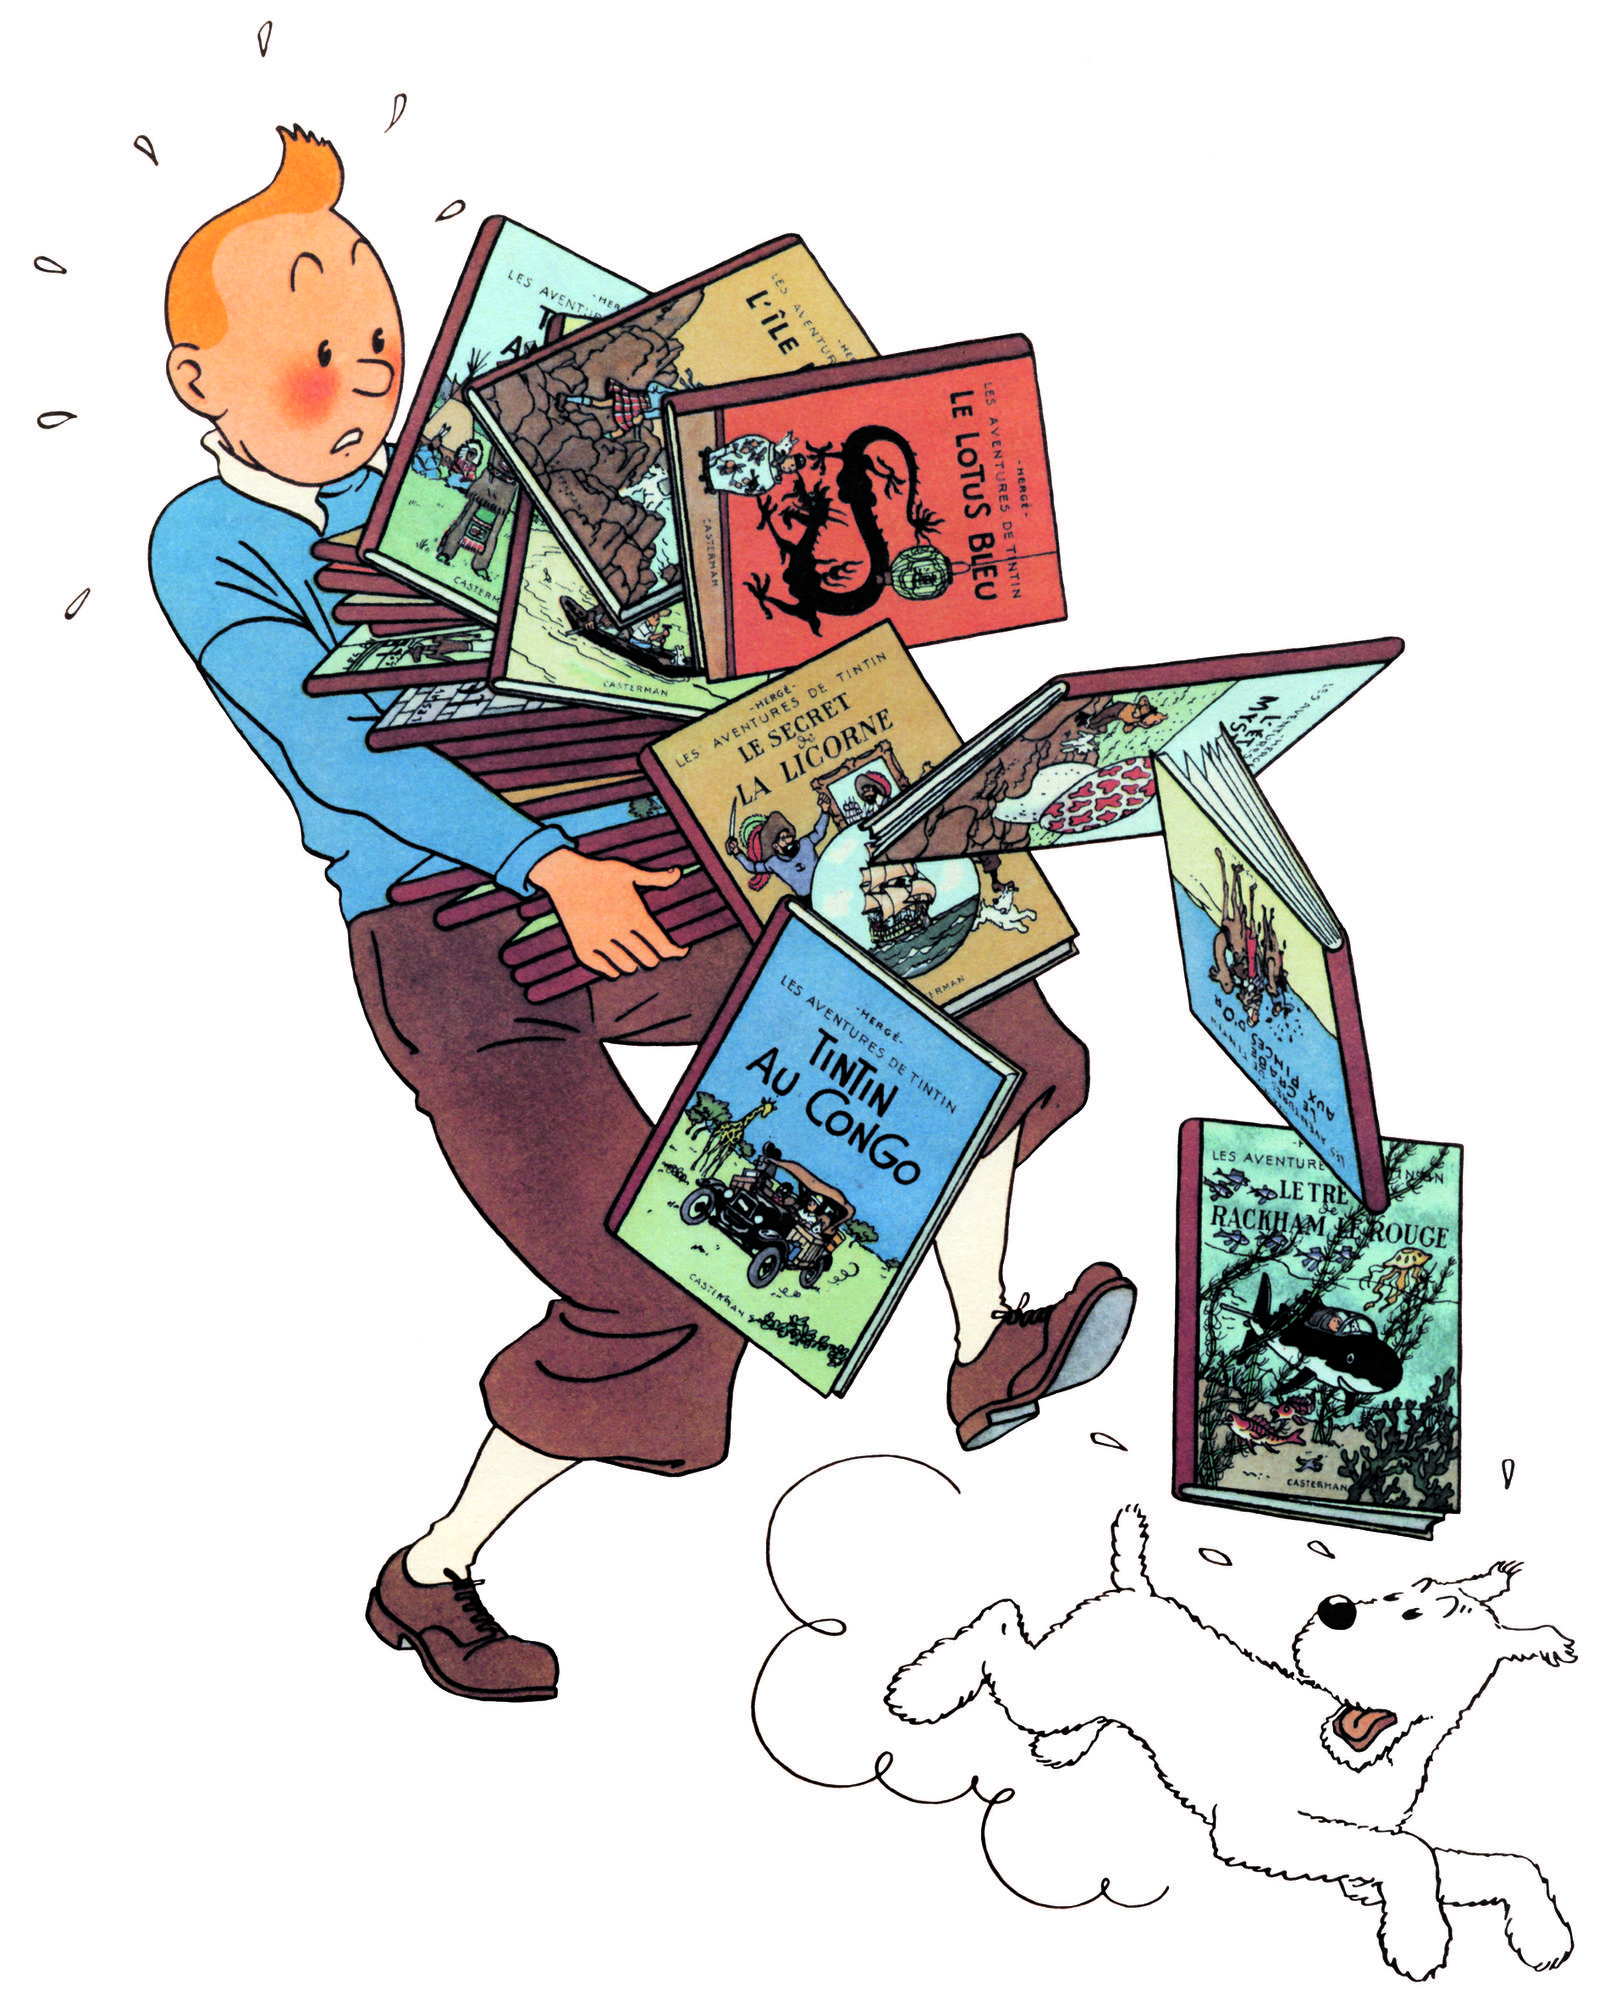 L'essentiel à propos de Tintin et Hergé